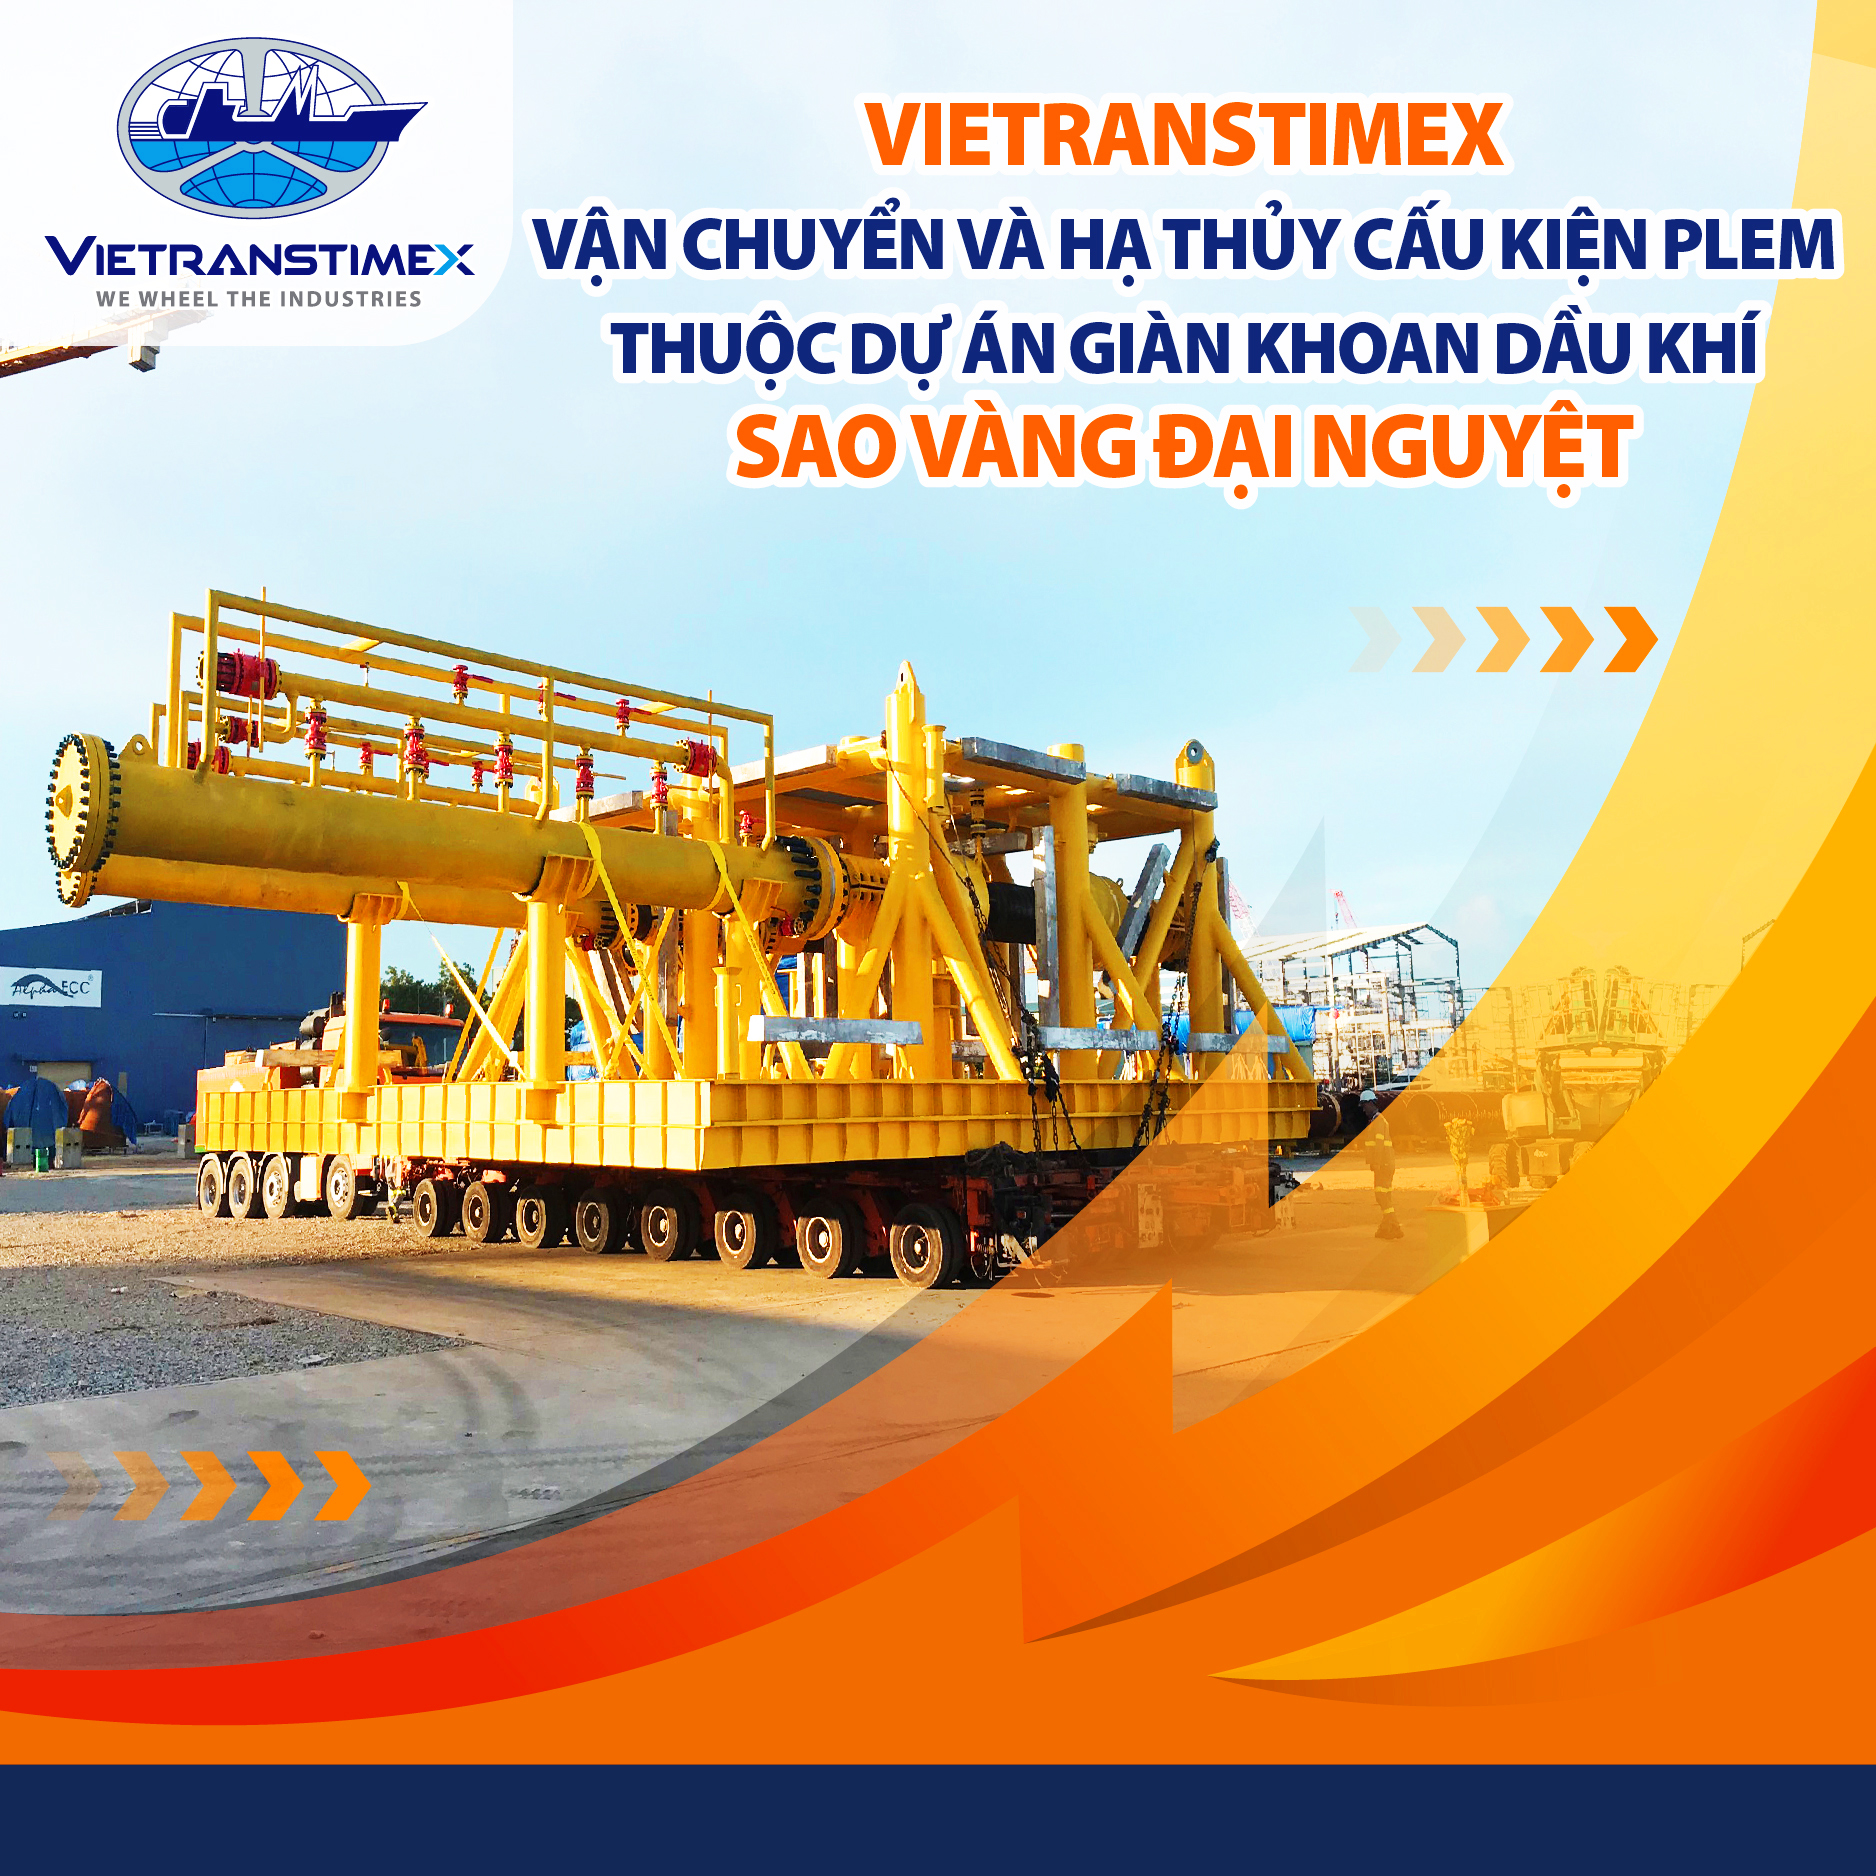 Vietranstimex vận chuyển và hạ thủy cấu kiện PLEM thuộc dự án giàn khoan dầu khí Sao Vàng Đại Nguyệt